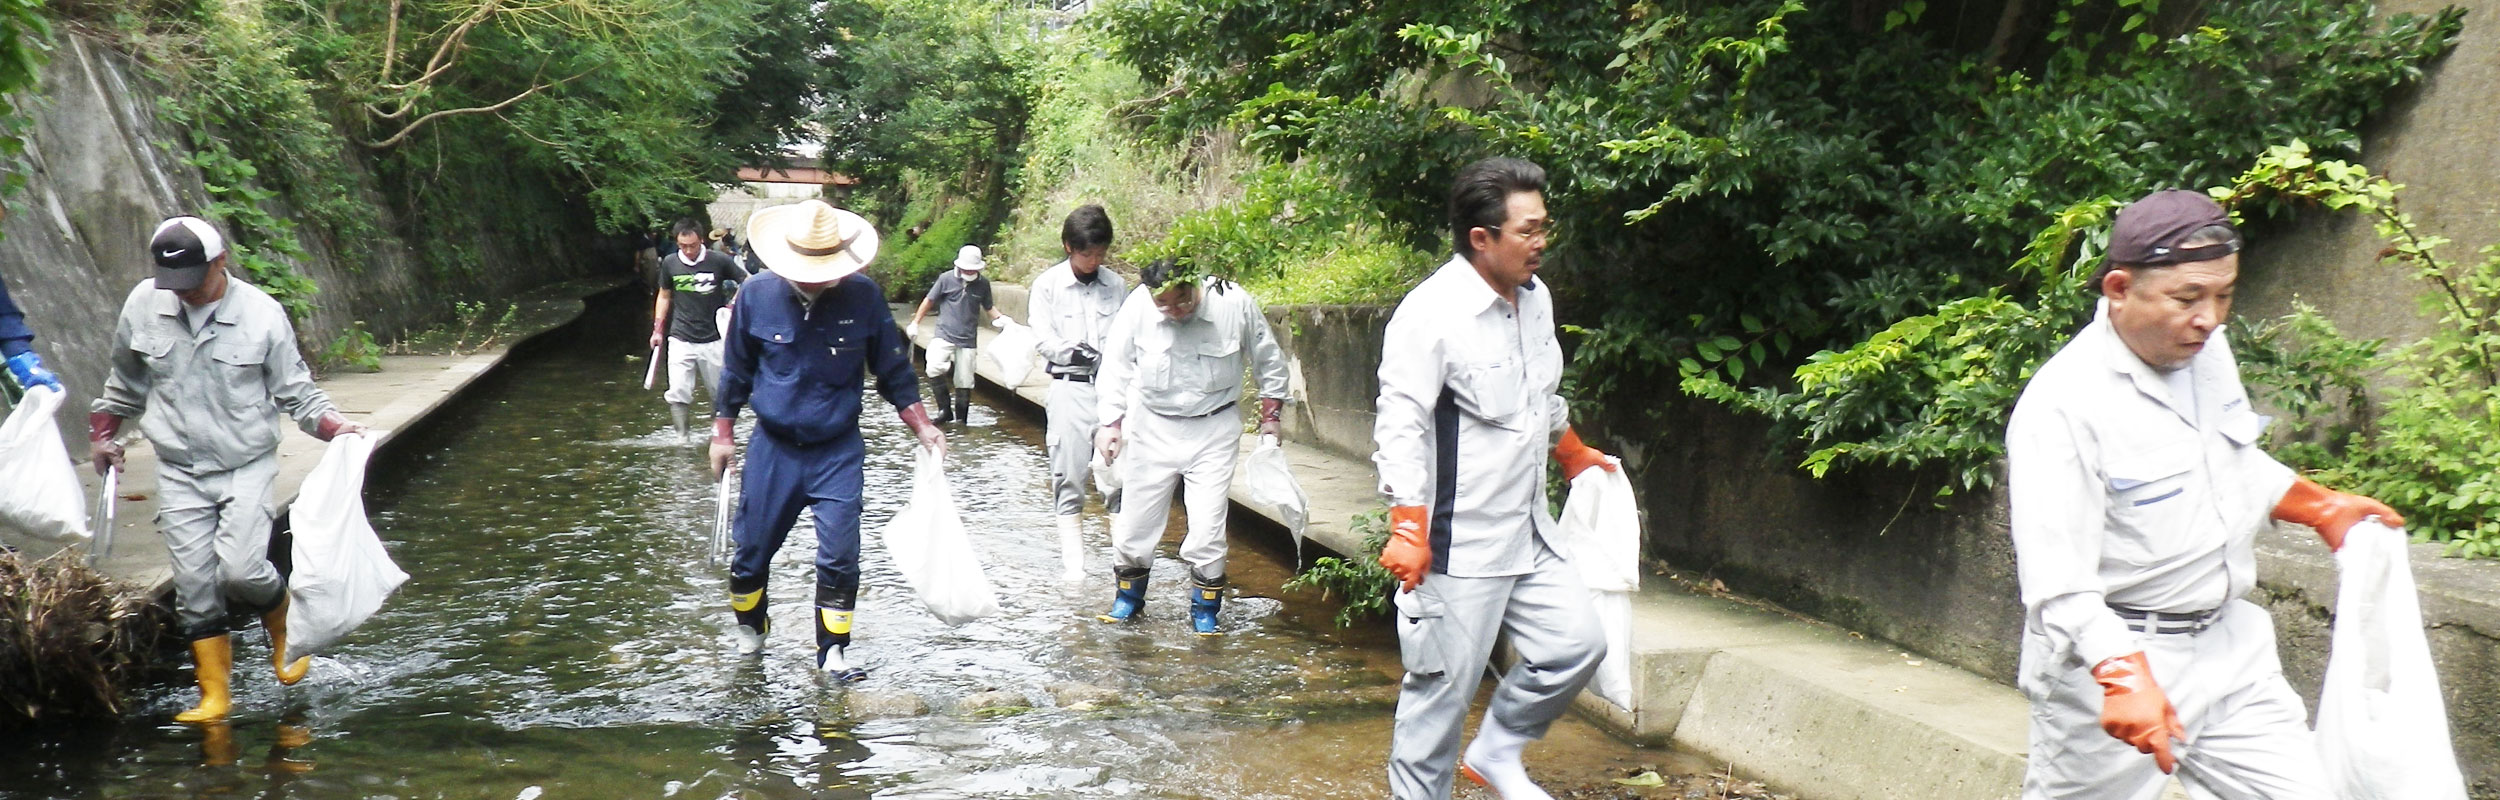 更紗川の清掃活動